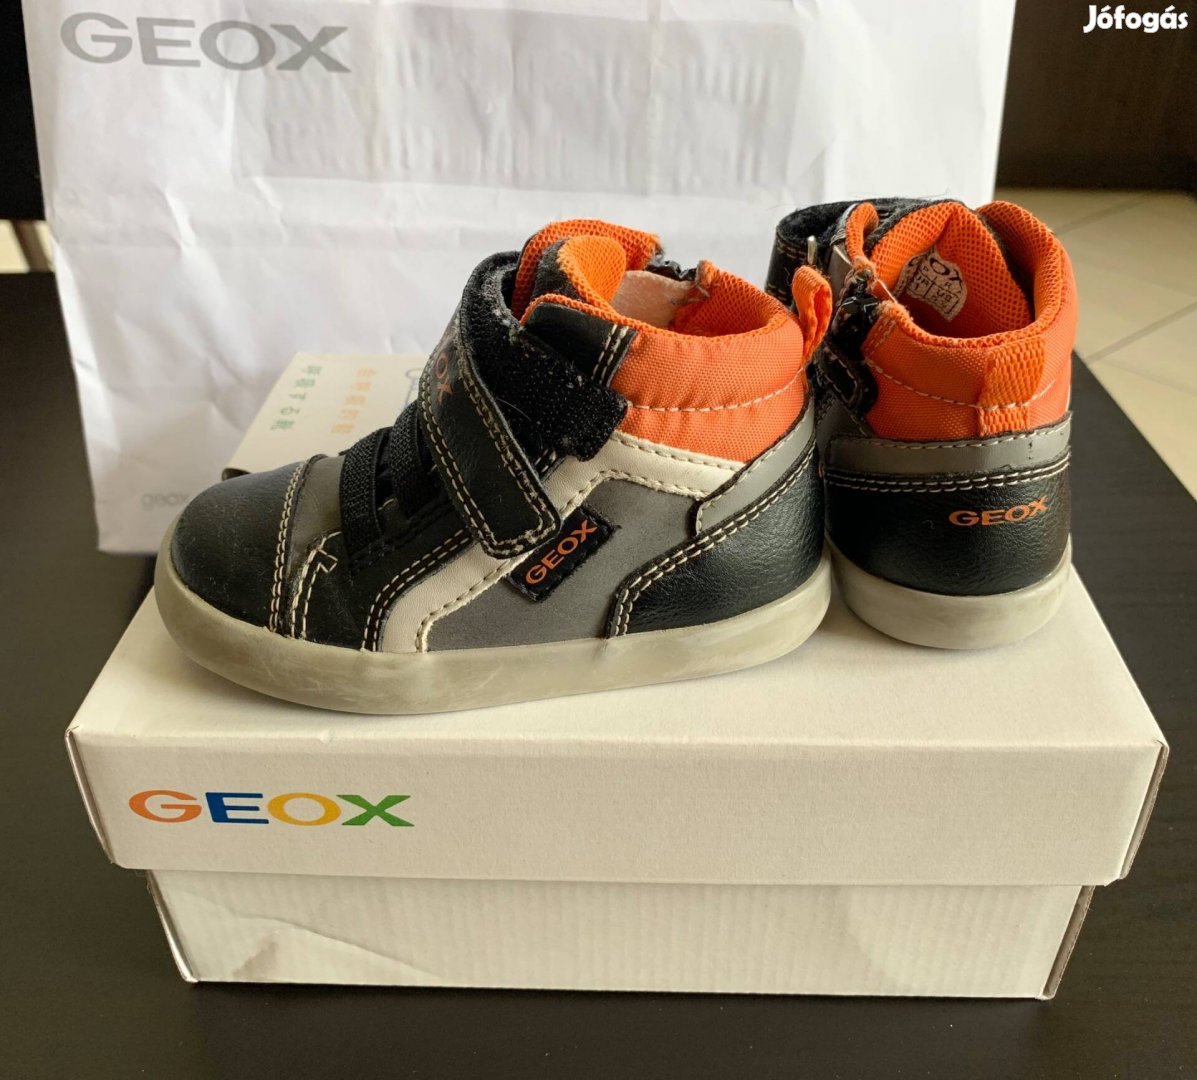 Geox cipő 21-es